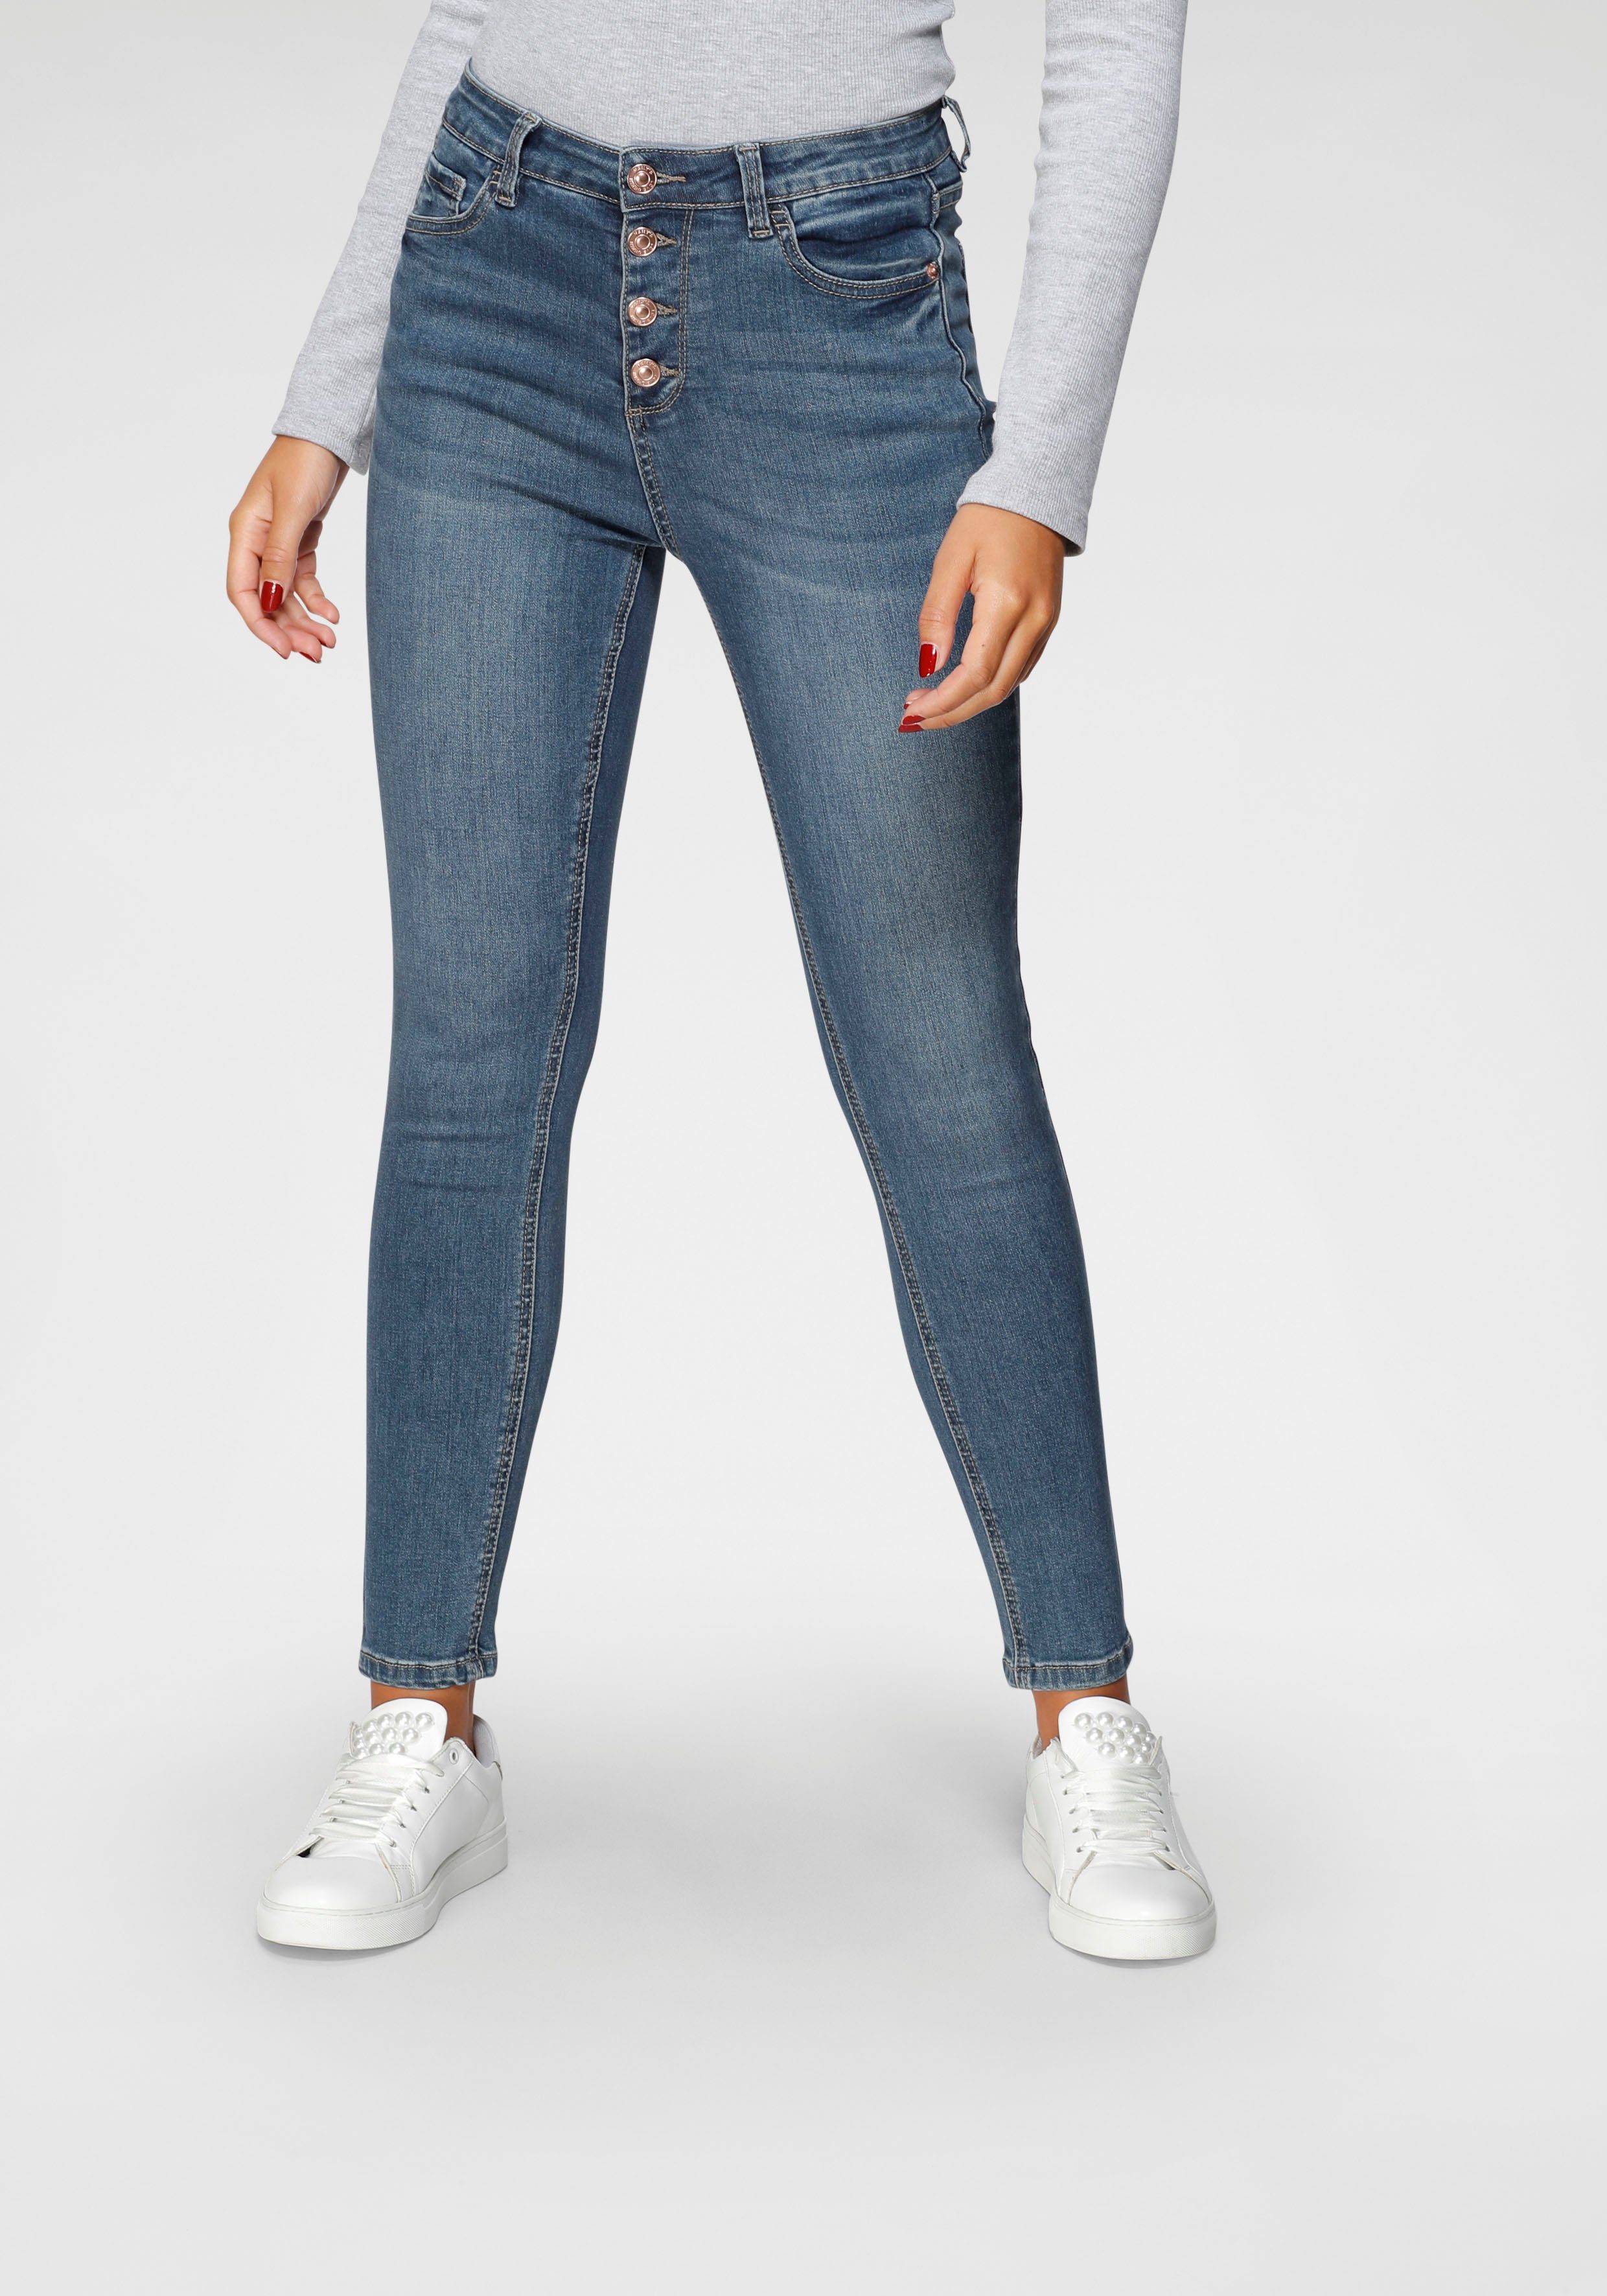 HaILY'S High-waist-Jeans ROMINA